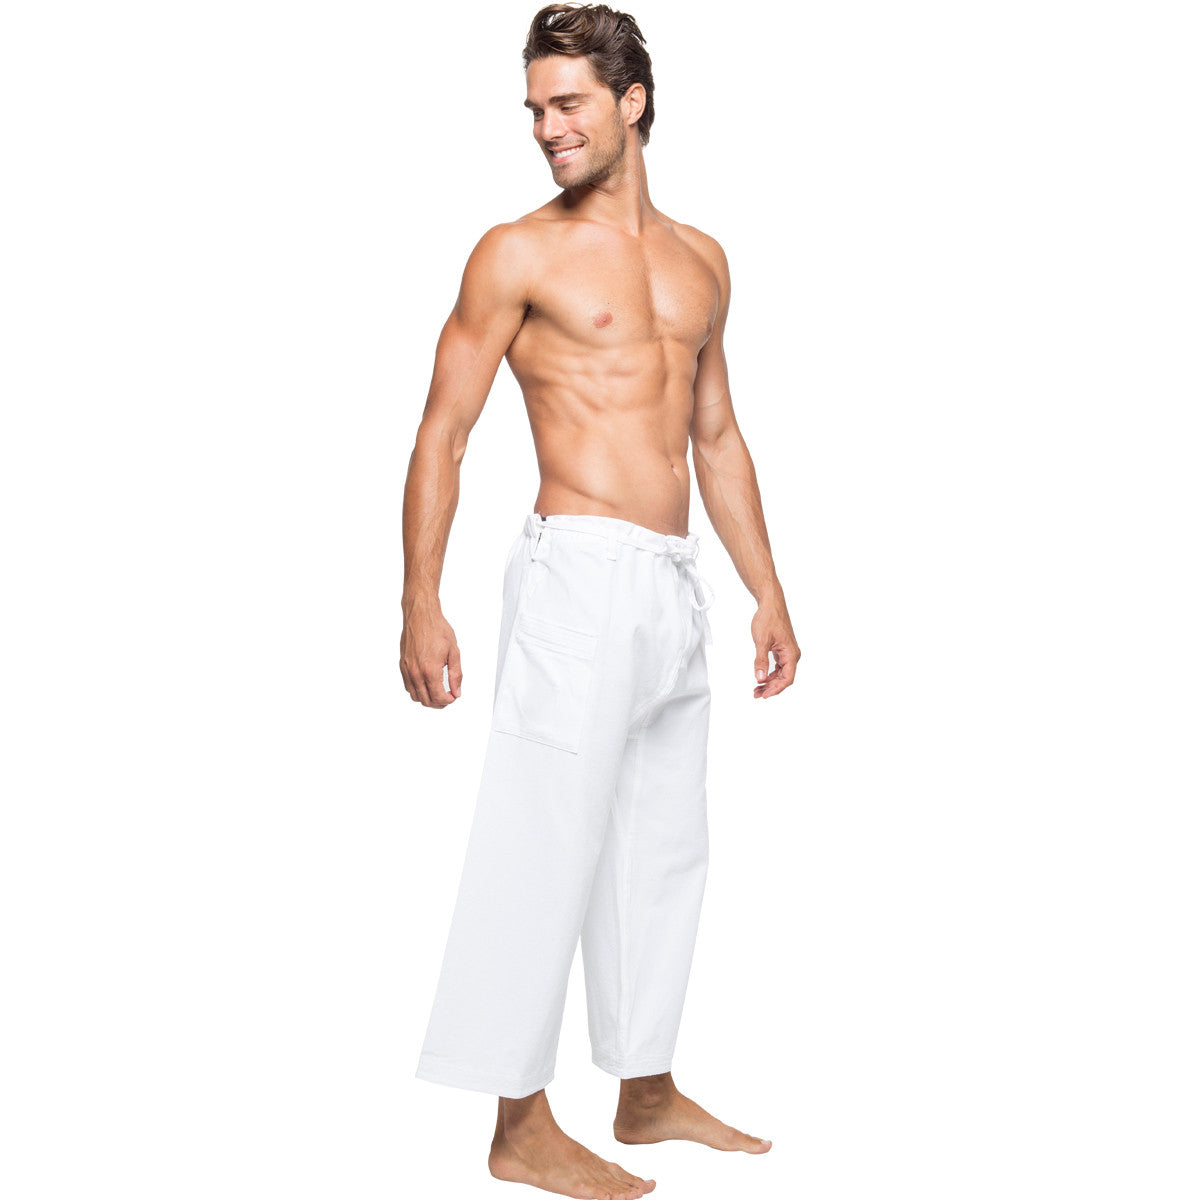 White Yoga Pants for Men 